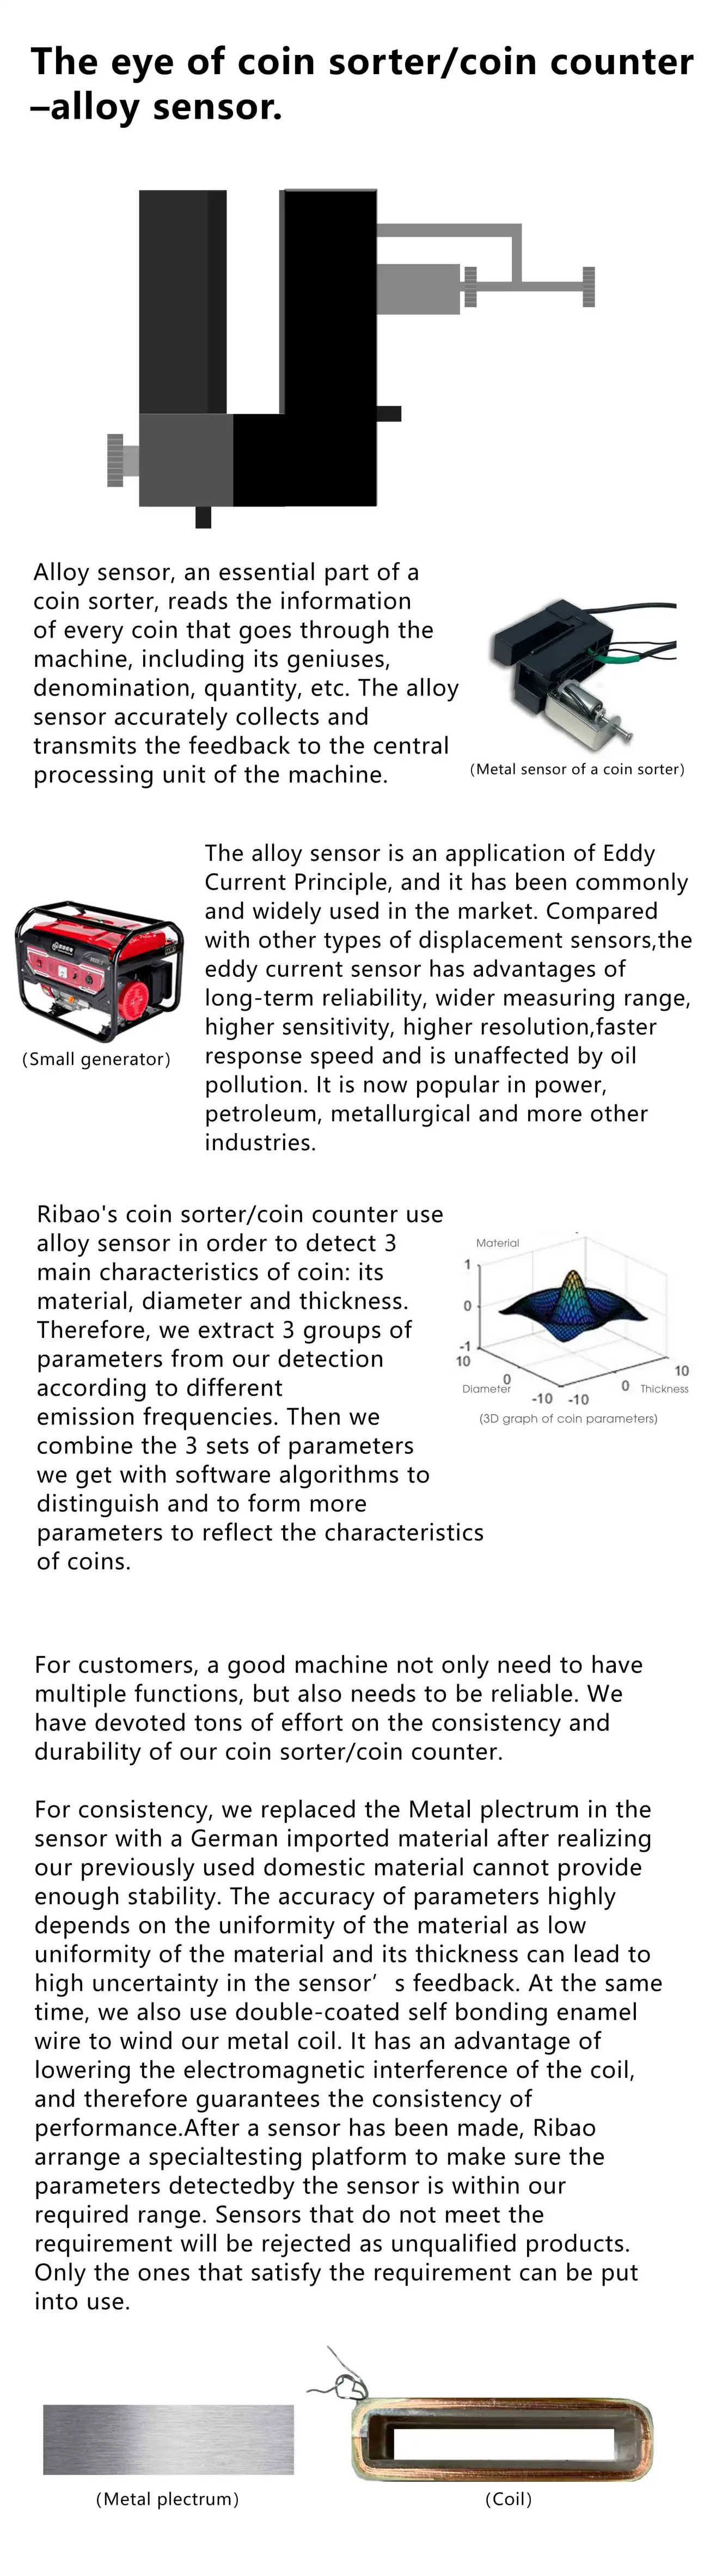 The eye of coin sorter/coin counter – alloy sensor